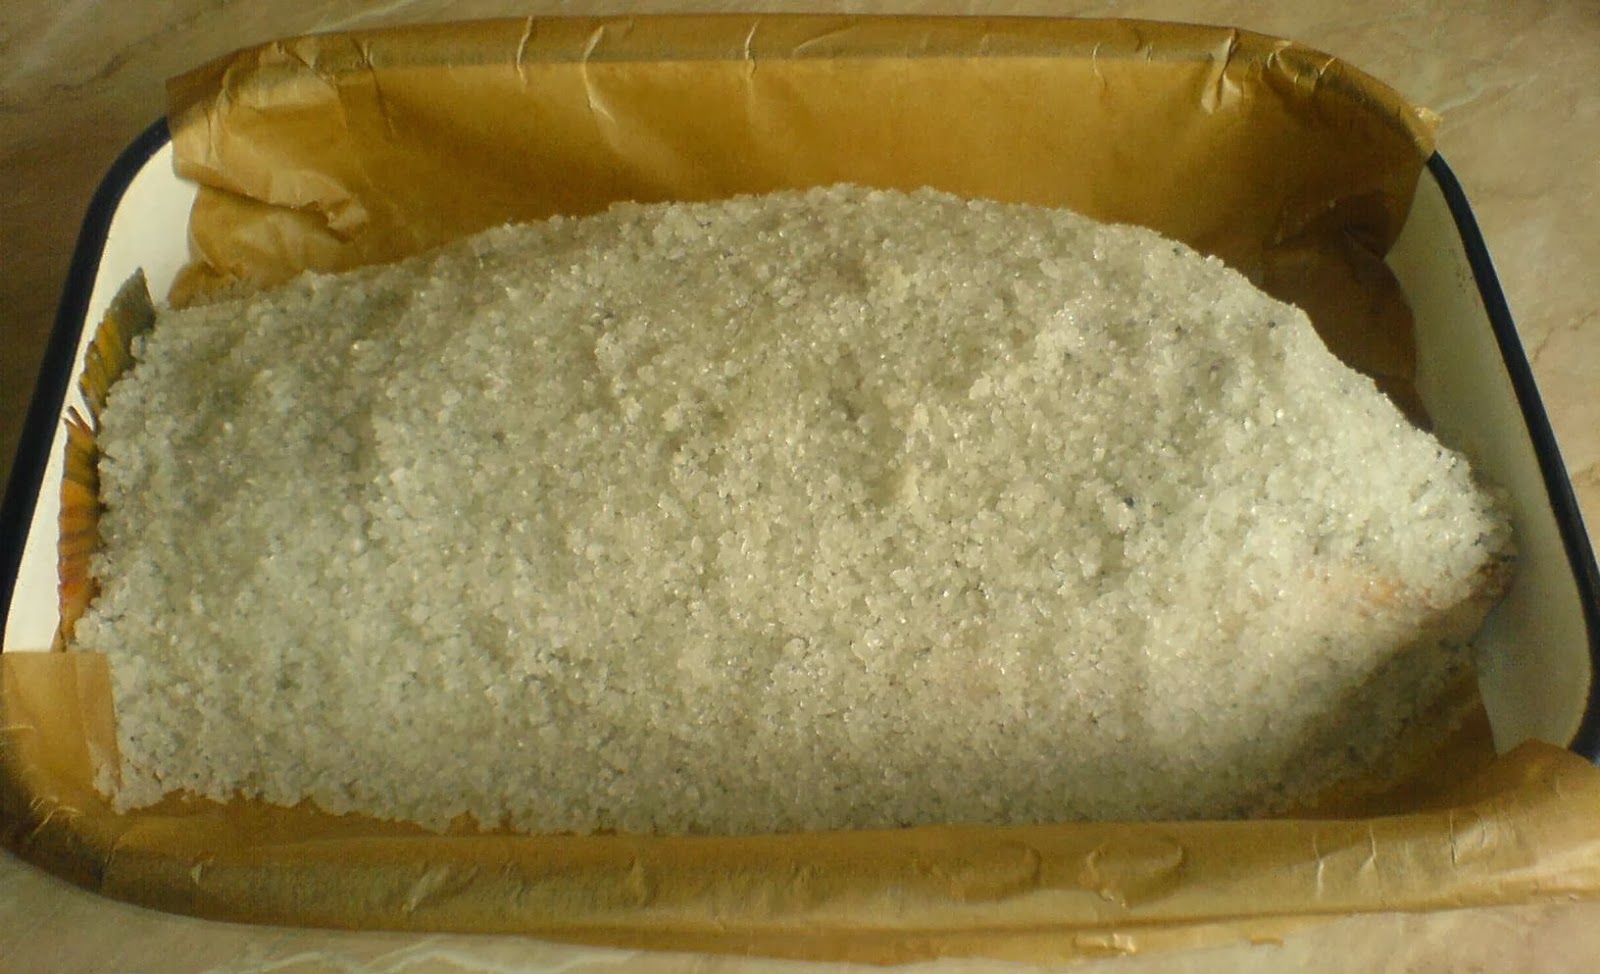 preparare crap la cuptor in crusta de sare, cum se prepara crap la cuptor in crusta de sare, cum se face crap la cuptor in crusta de sare, retete si preparate culinare cu peste, retete si preparate culinare din peste, 